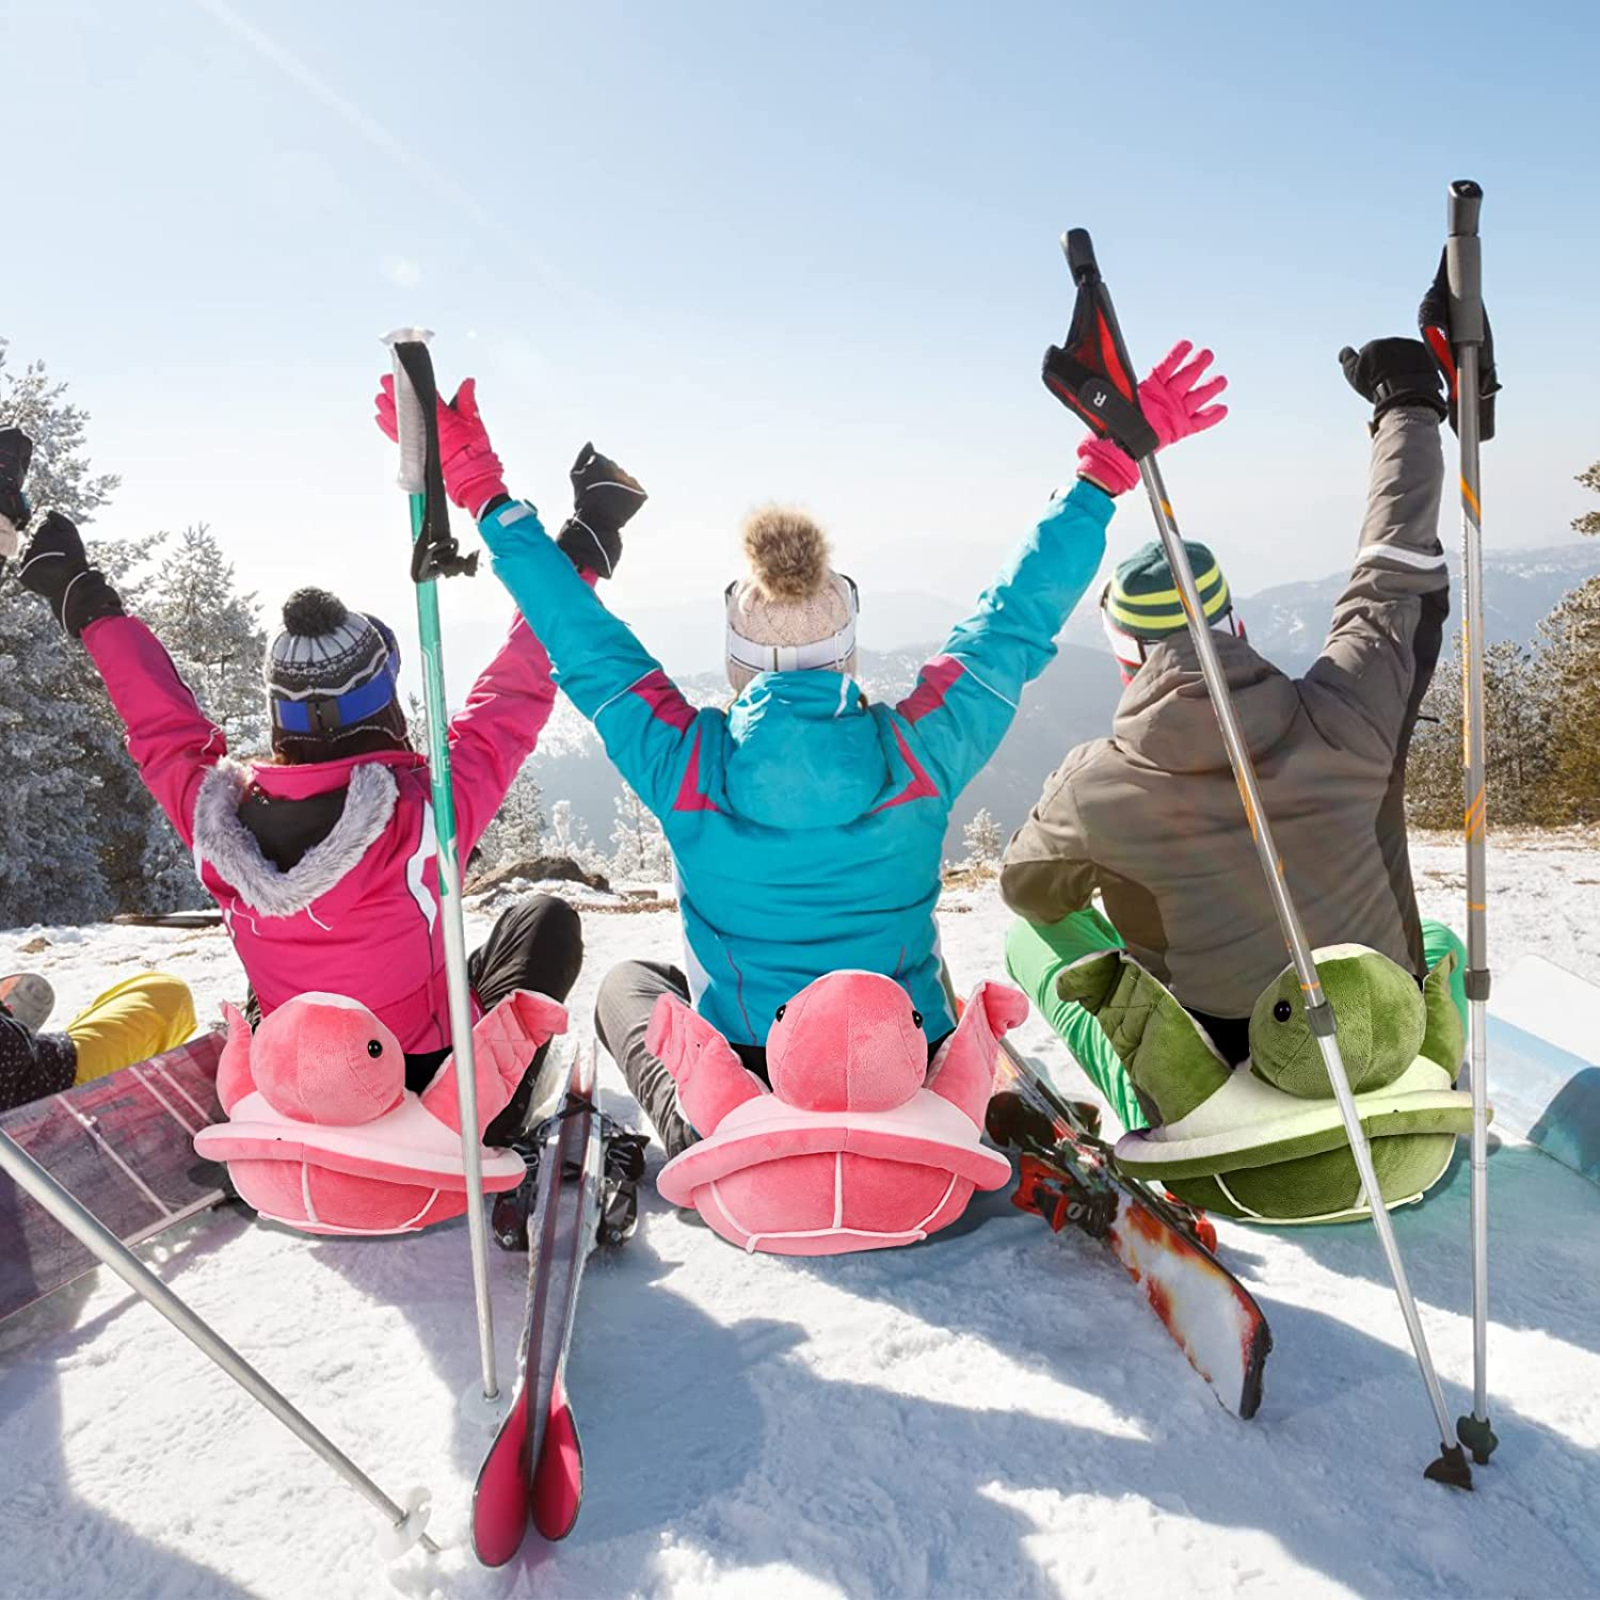 Rodilleras de esquí para Snowboard, Protector de rodilla anticaída, equipo  de protección de cadera de tortuga, cómodo para esquiar